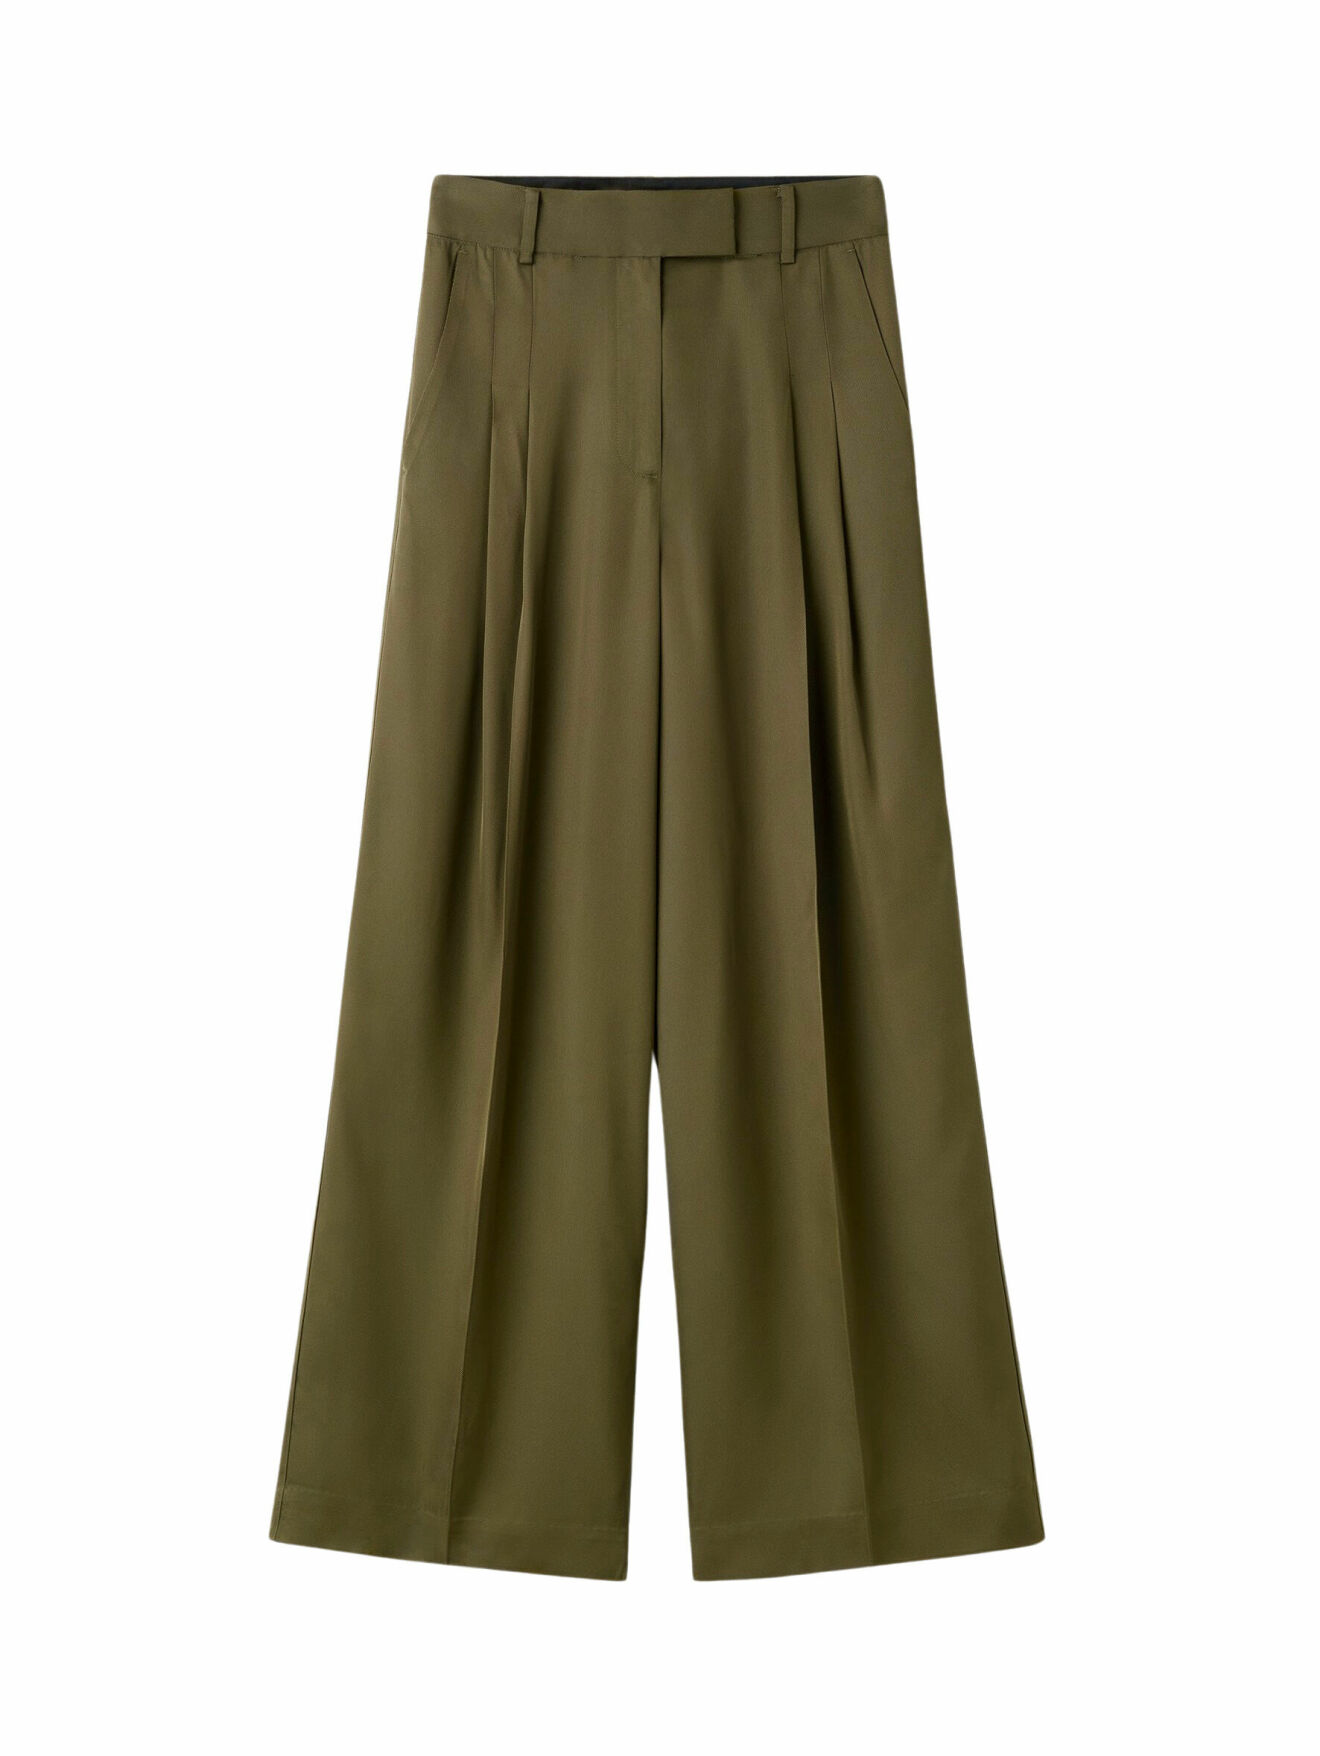 Derris shirt och Cymbaria high-waisted trousers, kapselkollektionen By Malene Birger x Moda Operandi.